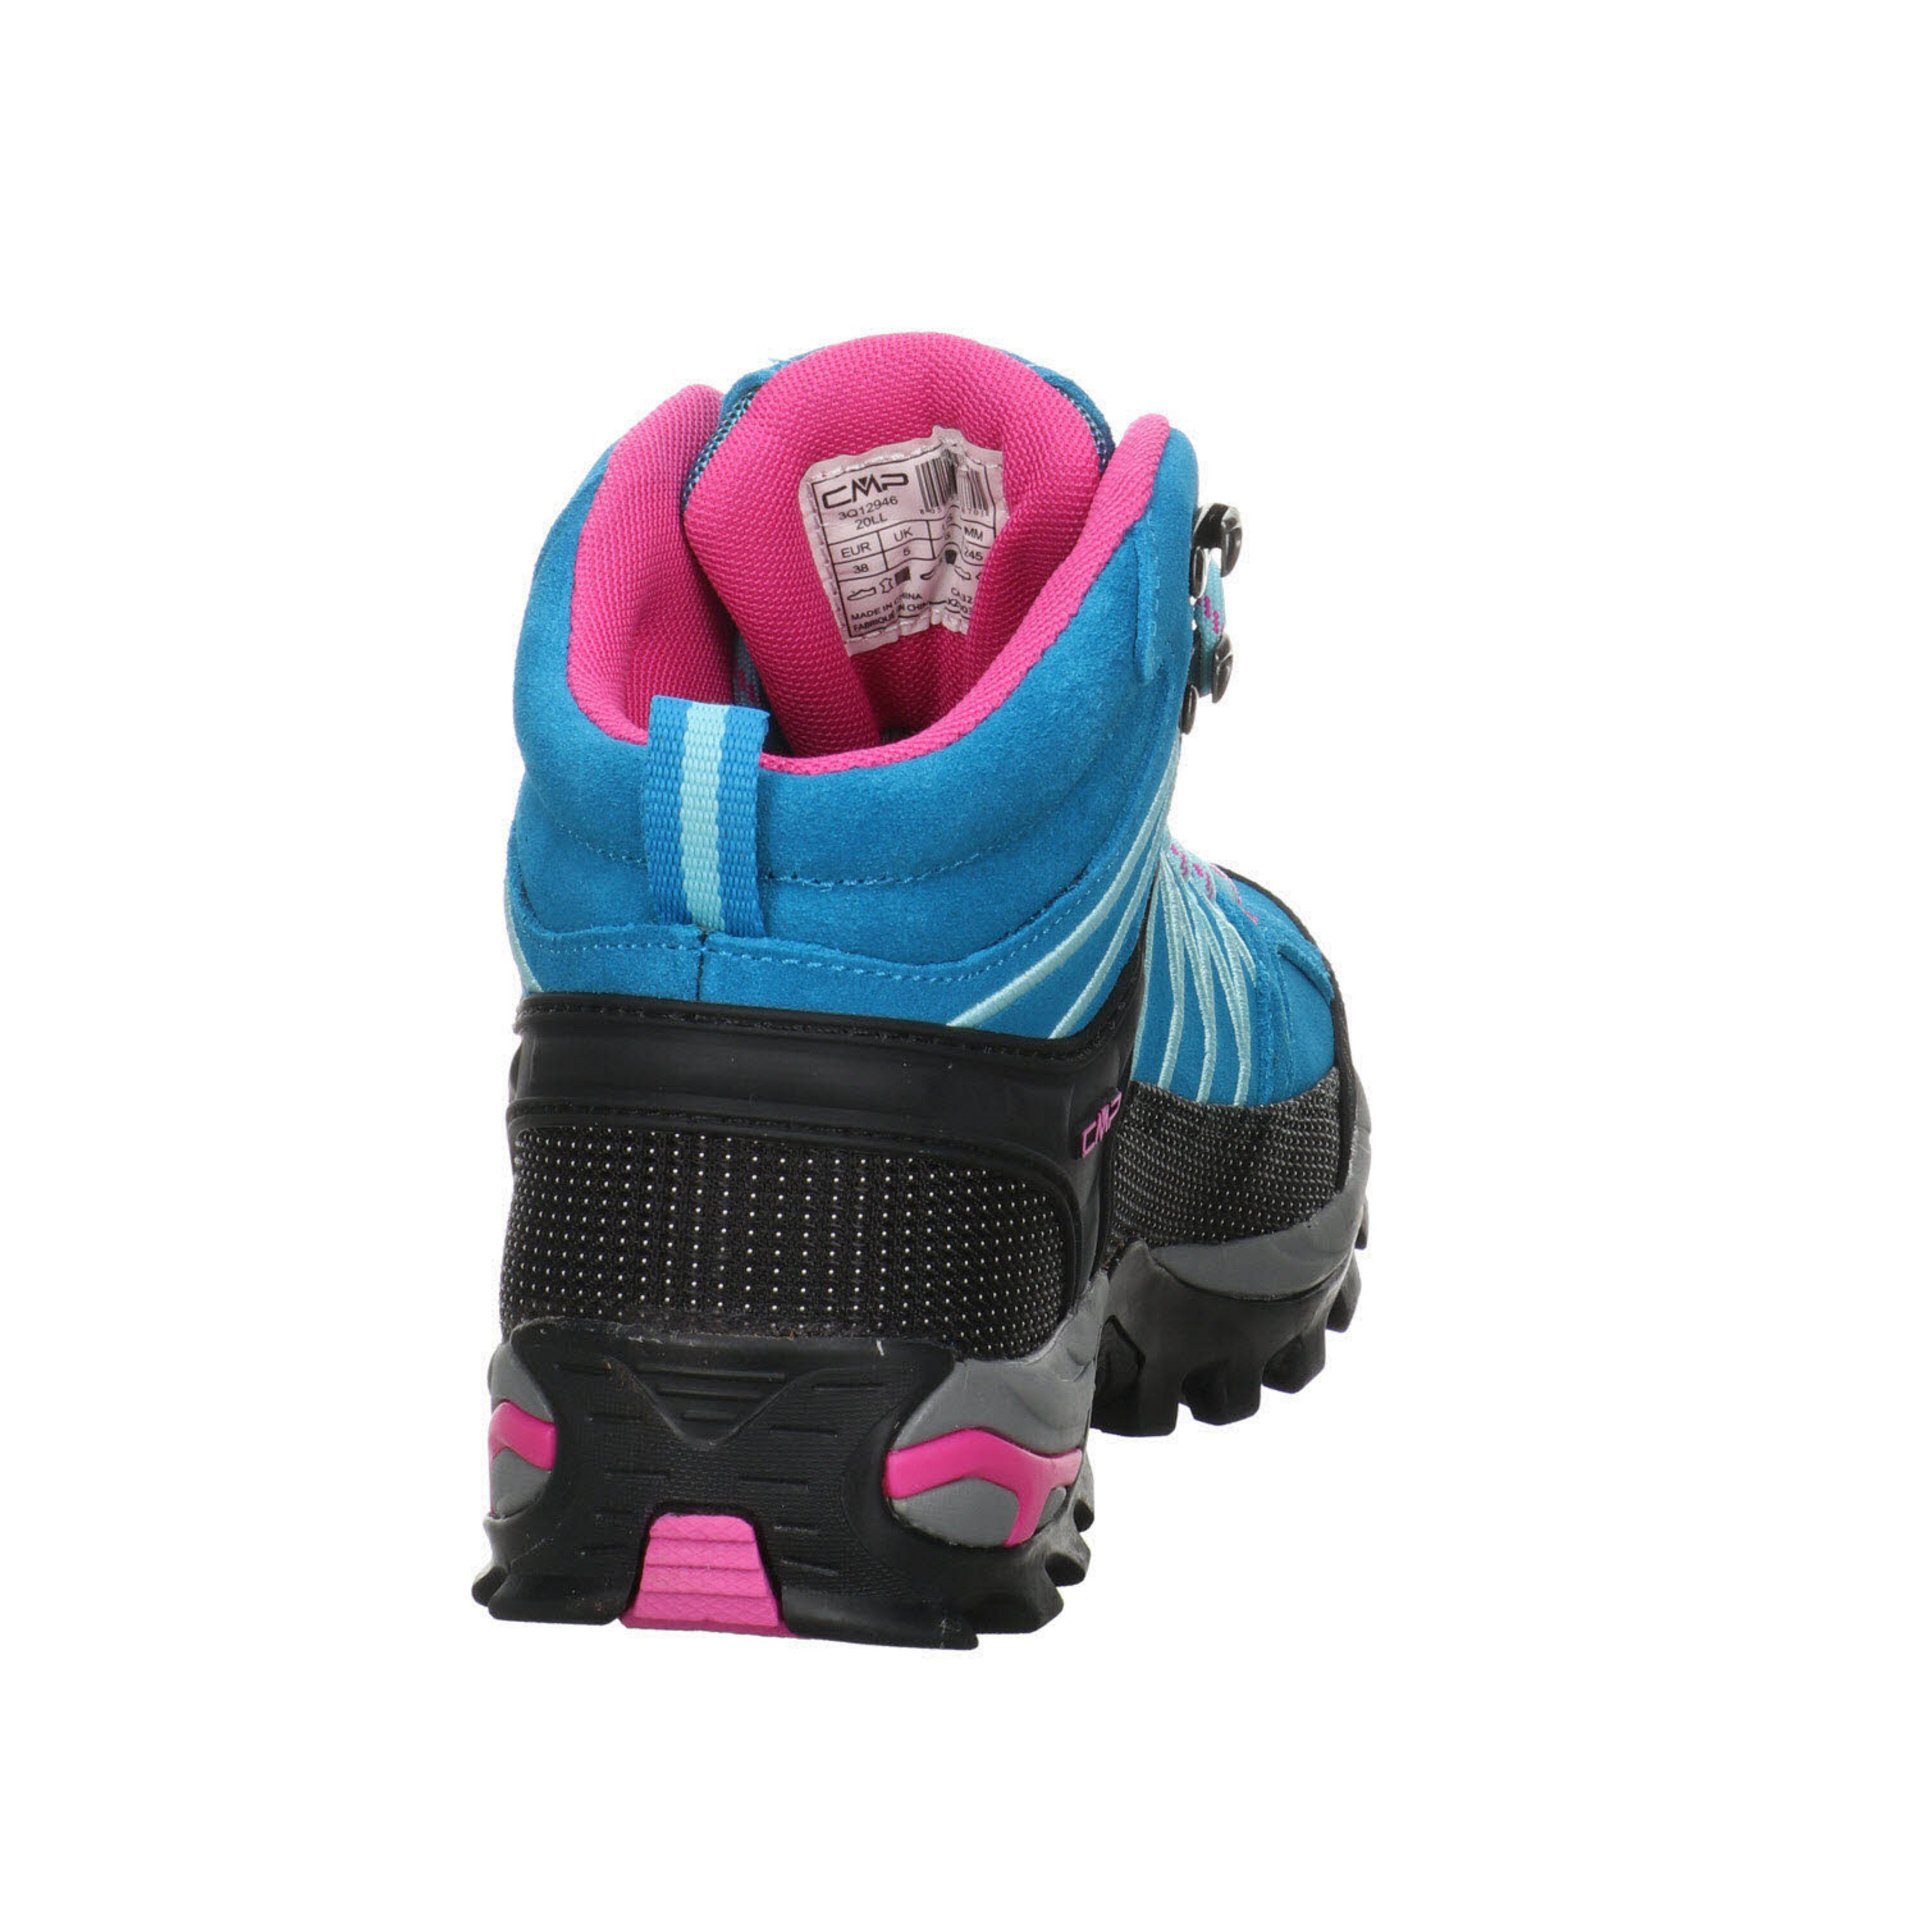 Damen Outdoorschuh Leder-/Textilkombination Outdoor türkis-pink Mid Rigel Schuhe CMP Outdoorschuh